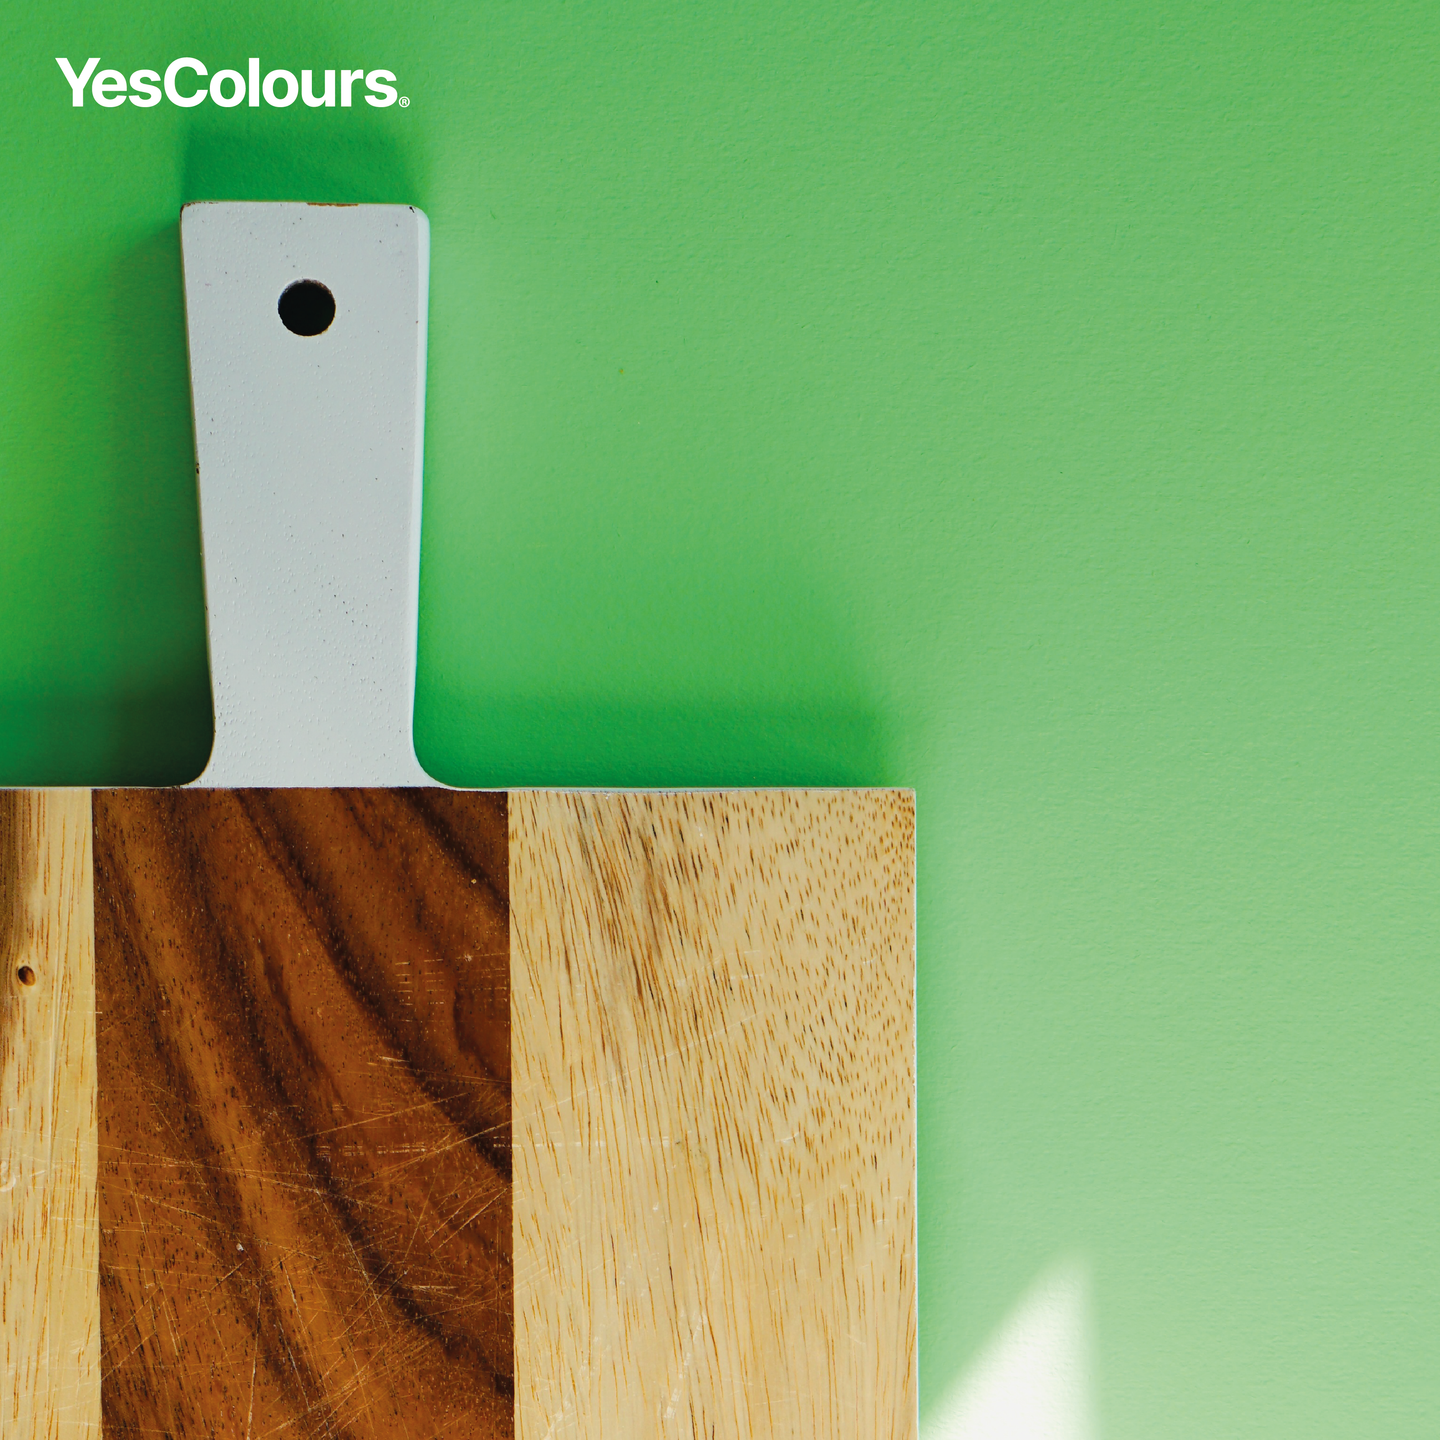 YesColours premium Friendly Green matt emulsion paint Dulux paint, Coat Paint, Lick Paint